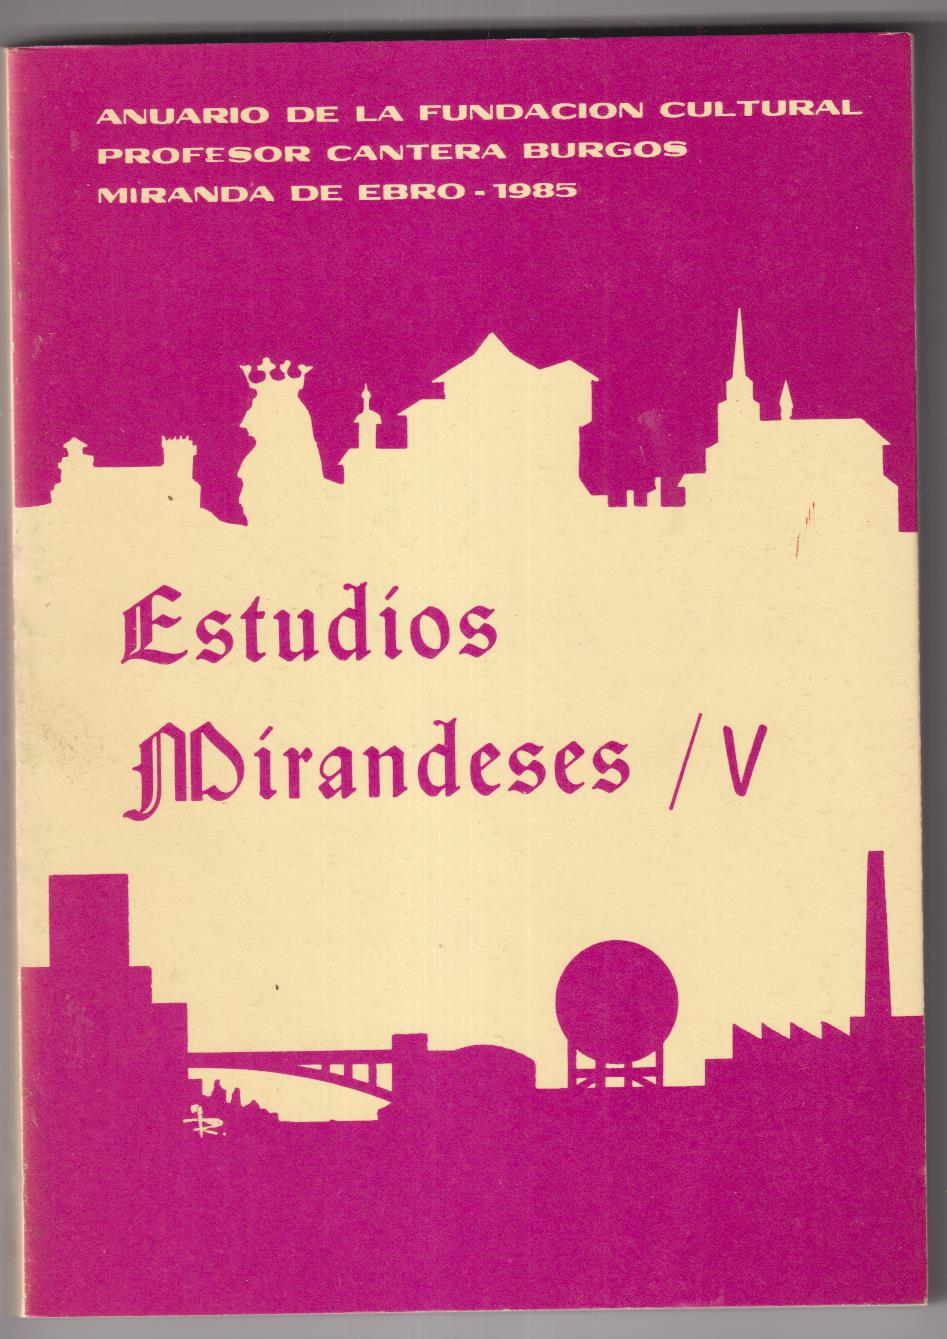 Estudios Mirandeses V. Miranda de Ebro 1985